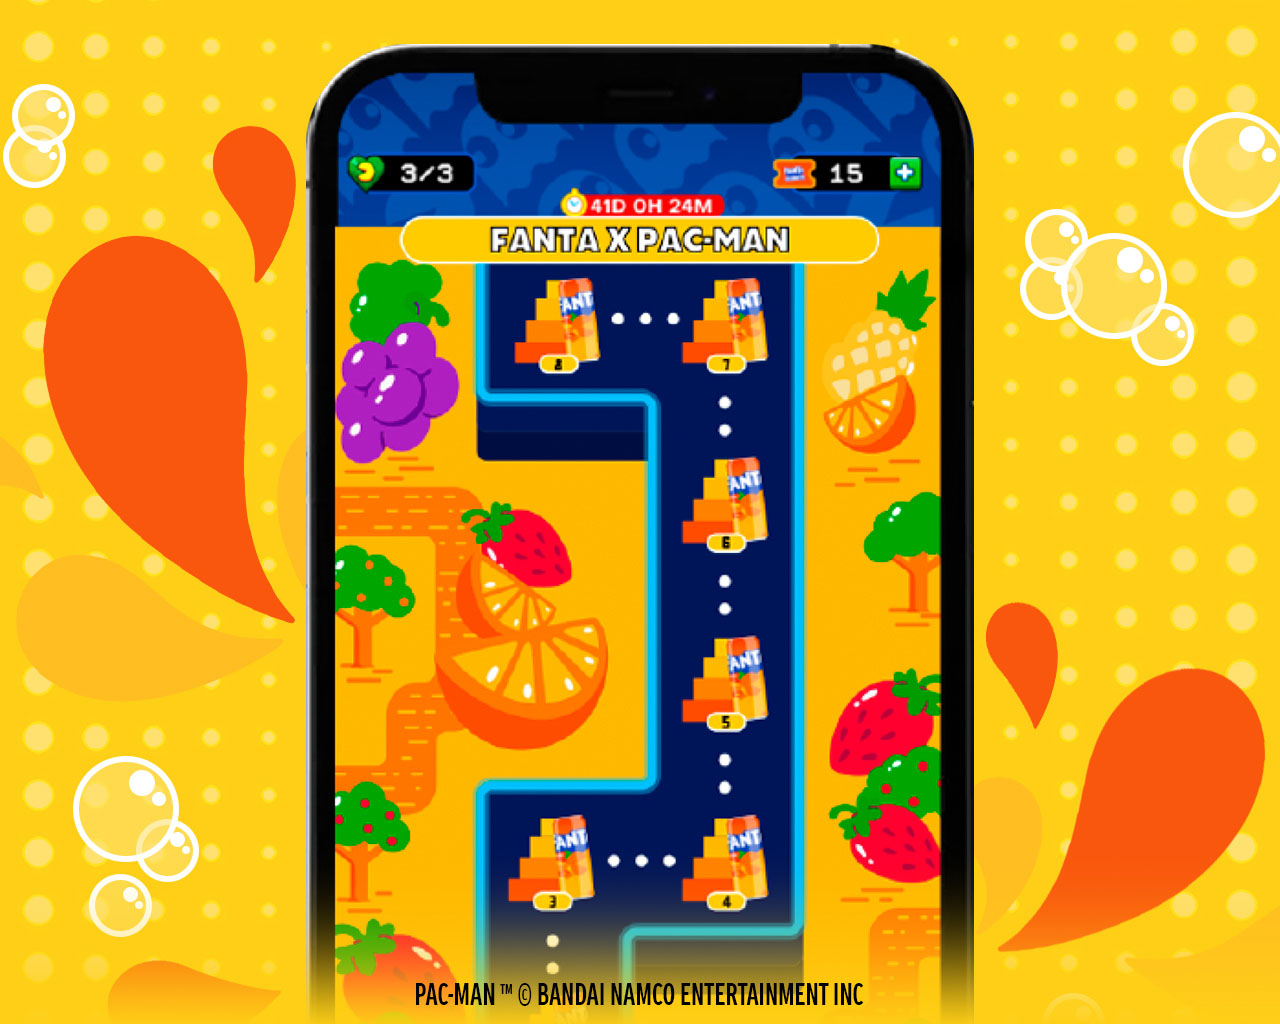 Interfaz del juego para celulares Android y IPhone de Fanta Pac-Man que muestra un nivel del laberinto con frutas y los fantasmas de colores. 